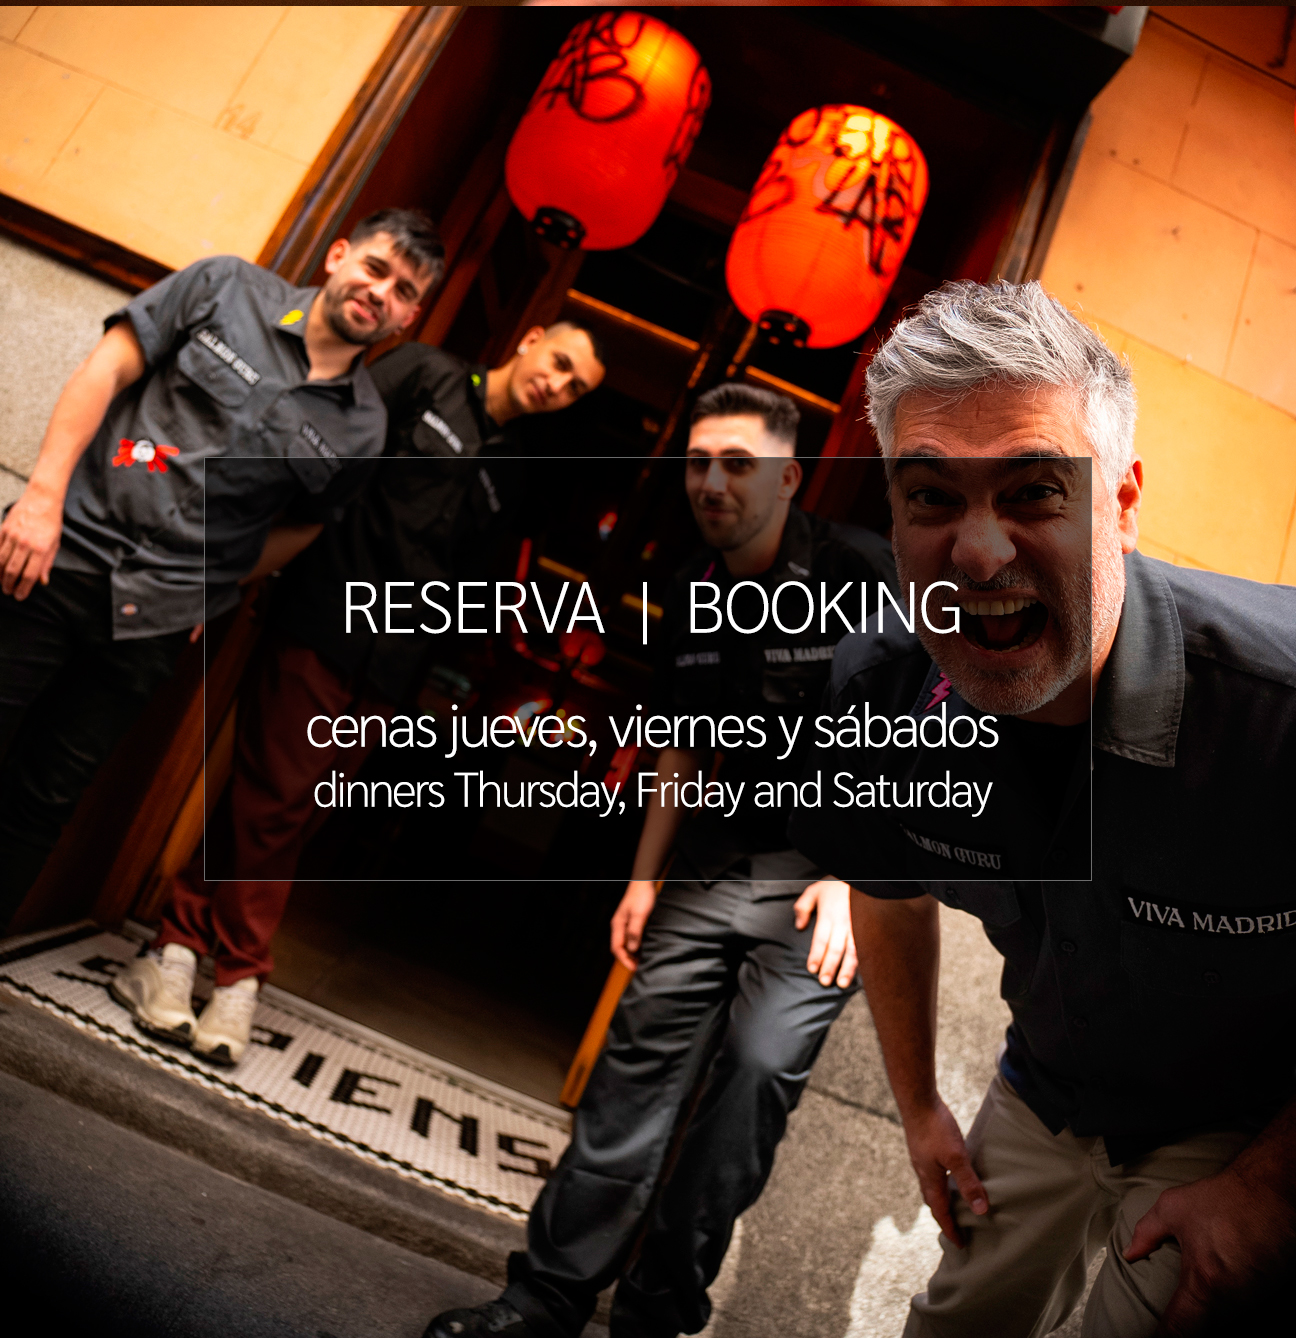 Reservas - bookings